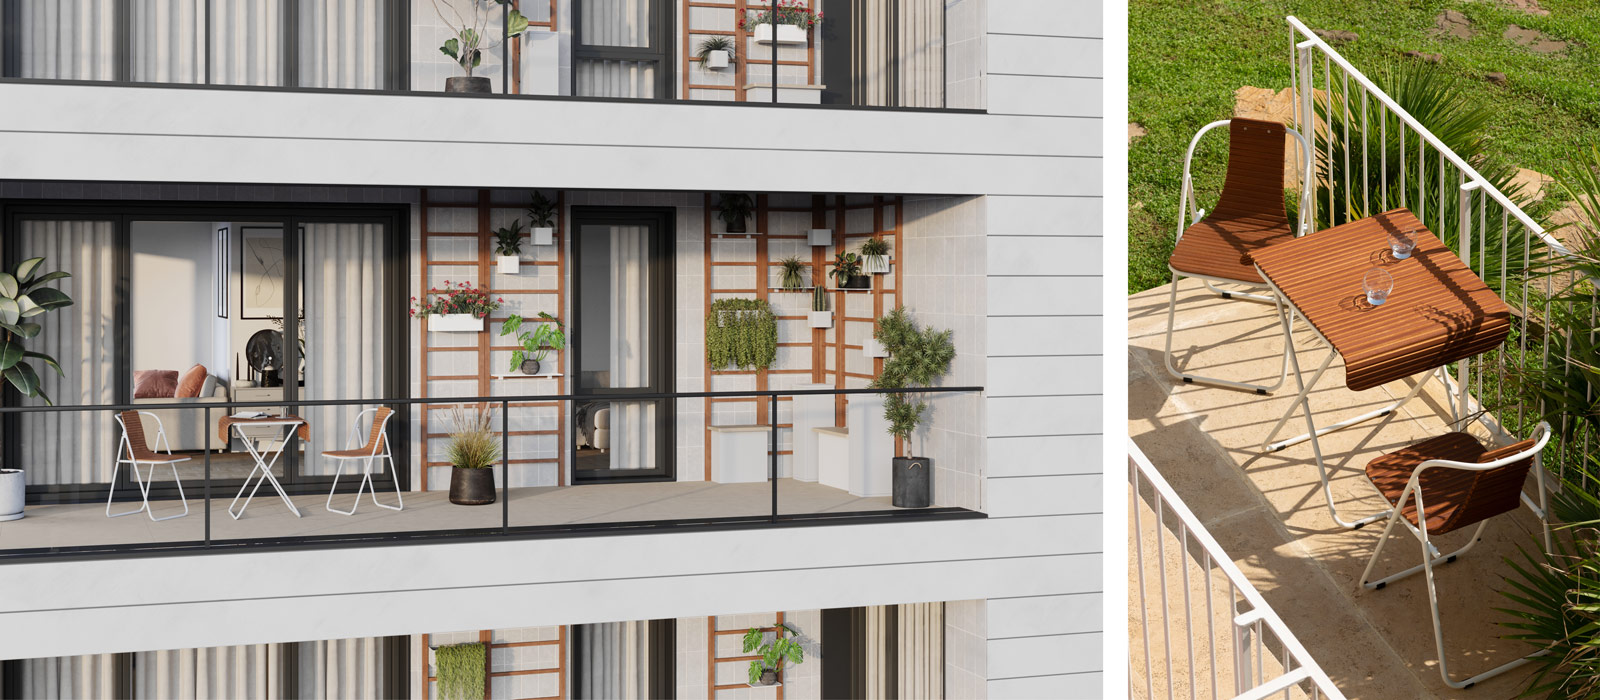 Arredamento balconi: mobili esterno per il tuo balcone